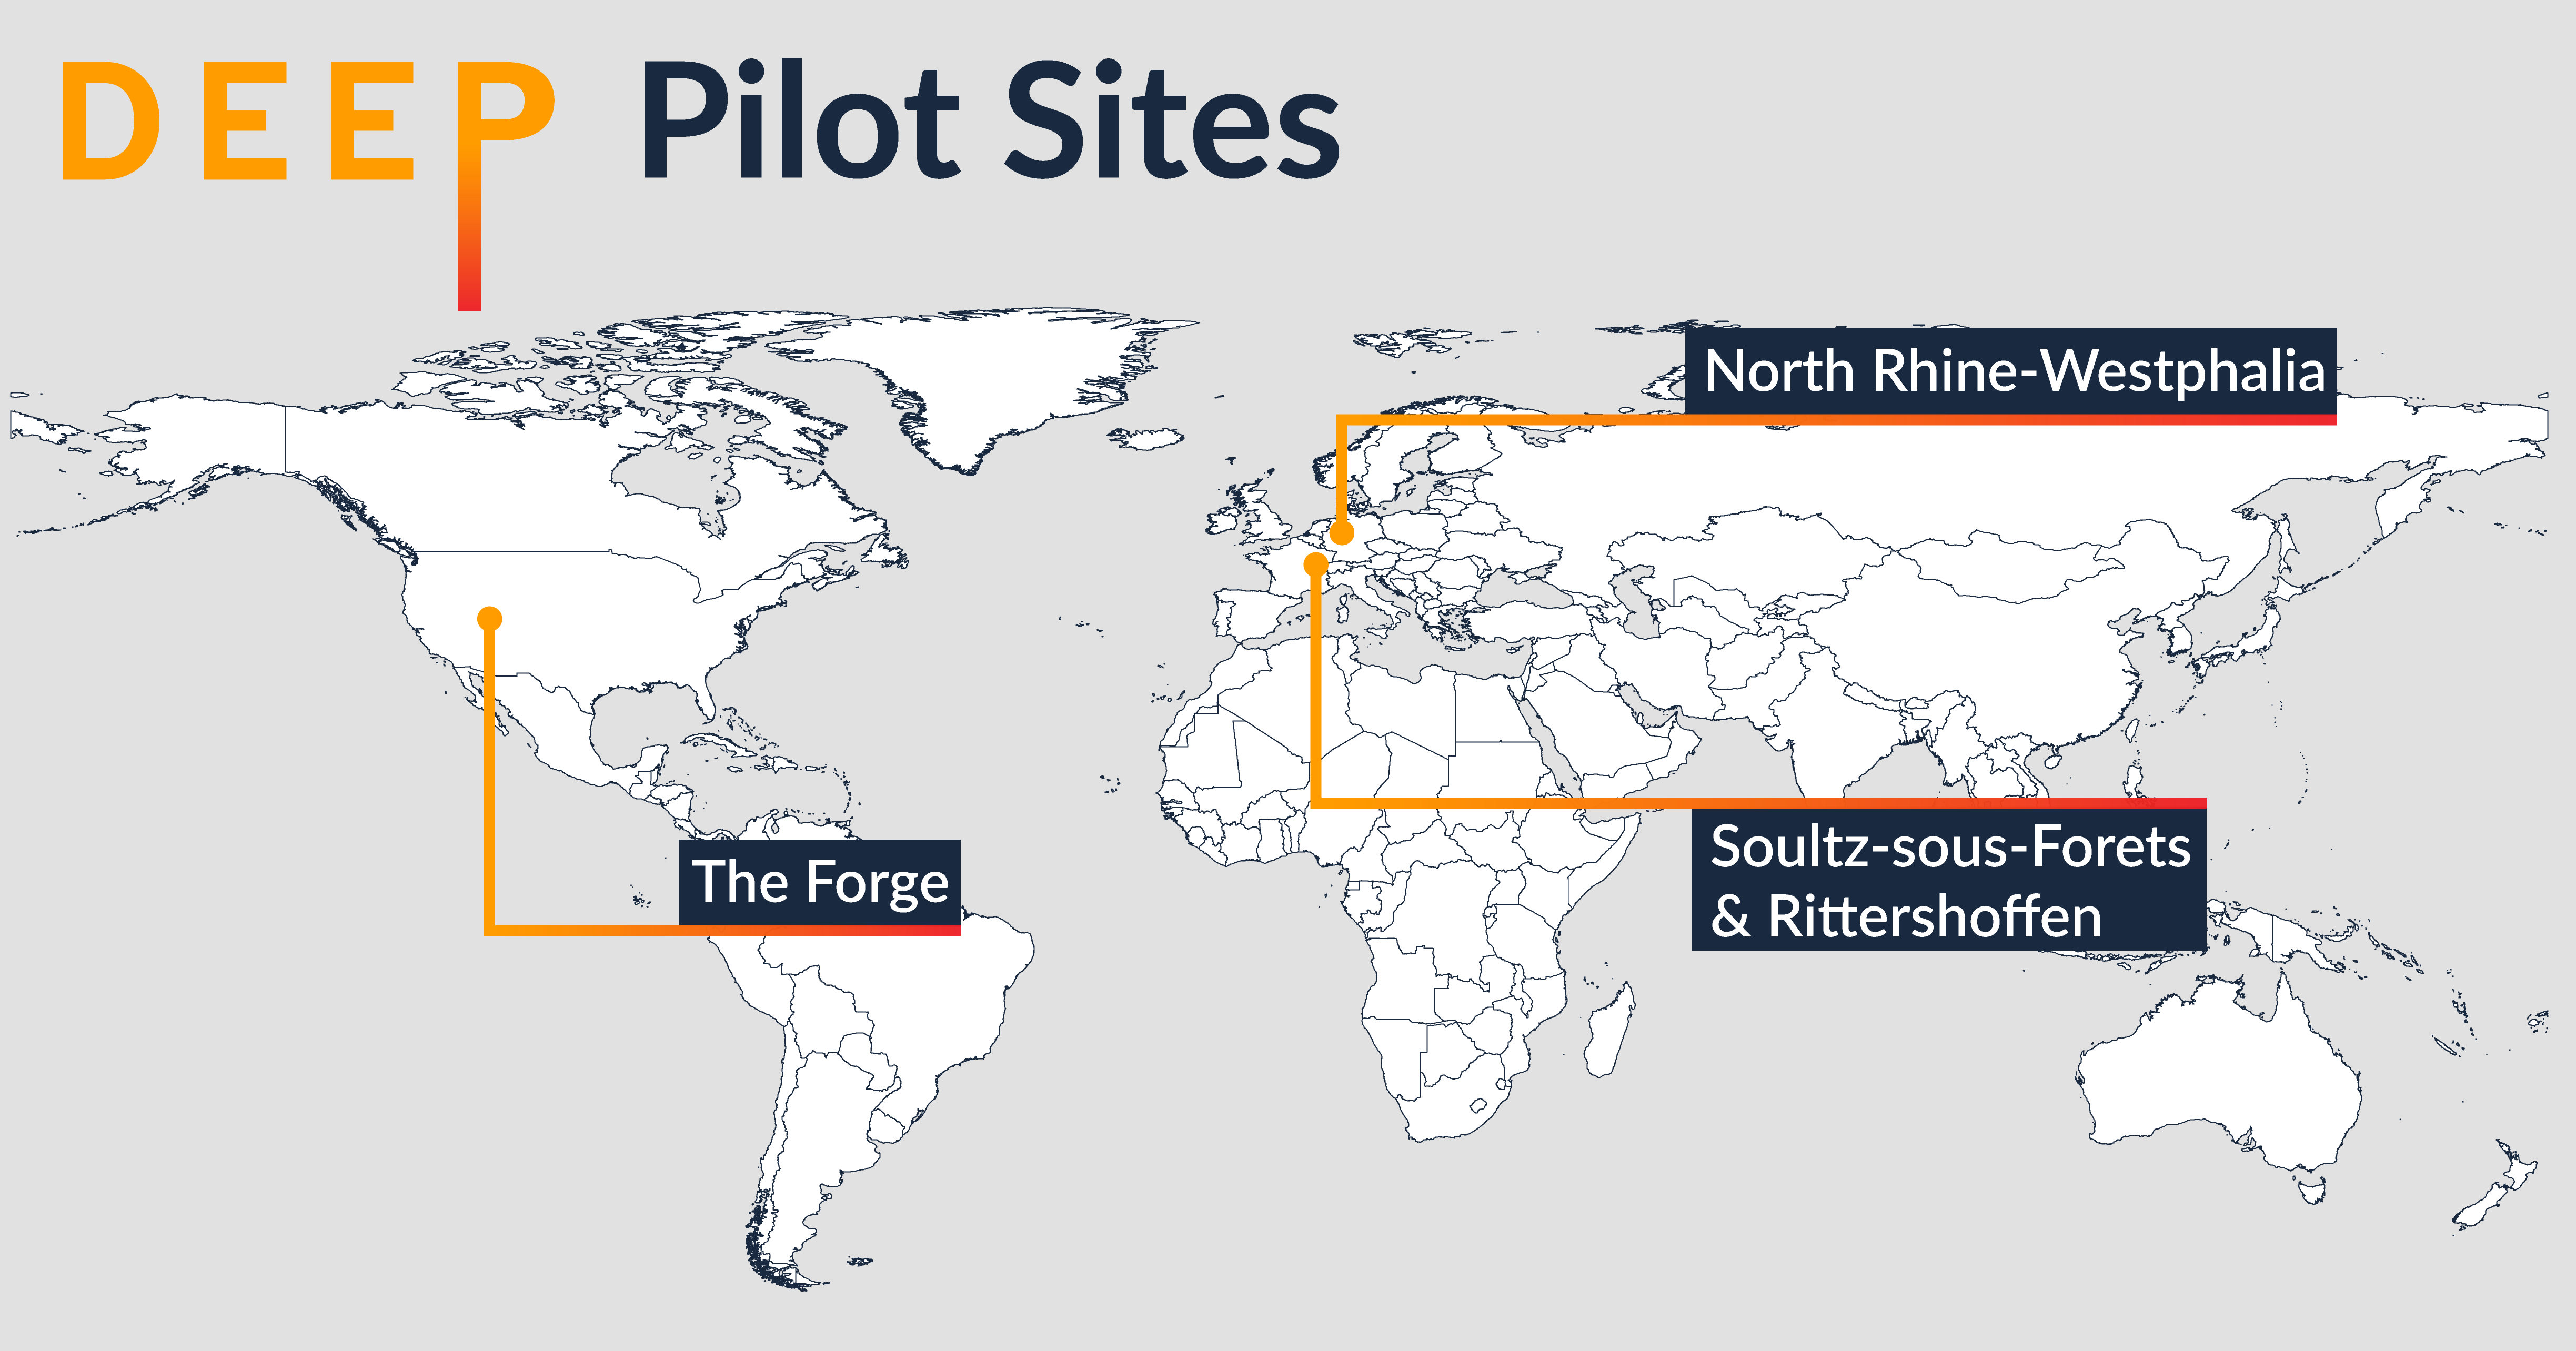 DEEP Pilot Sites